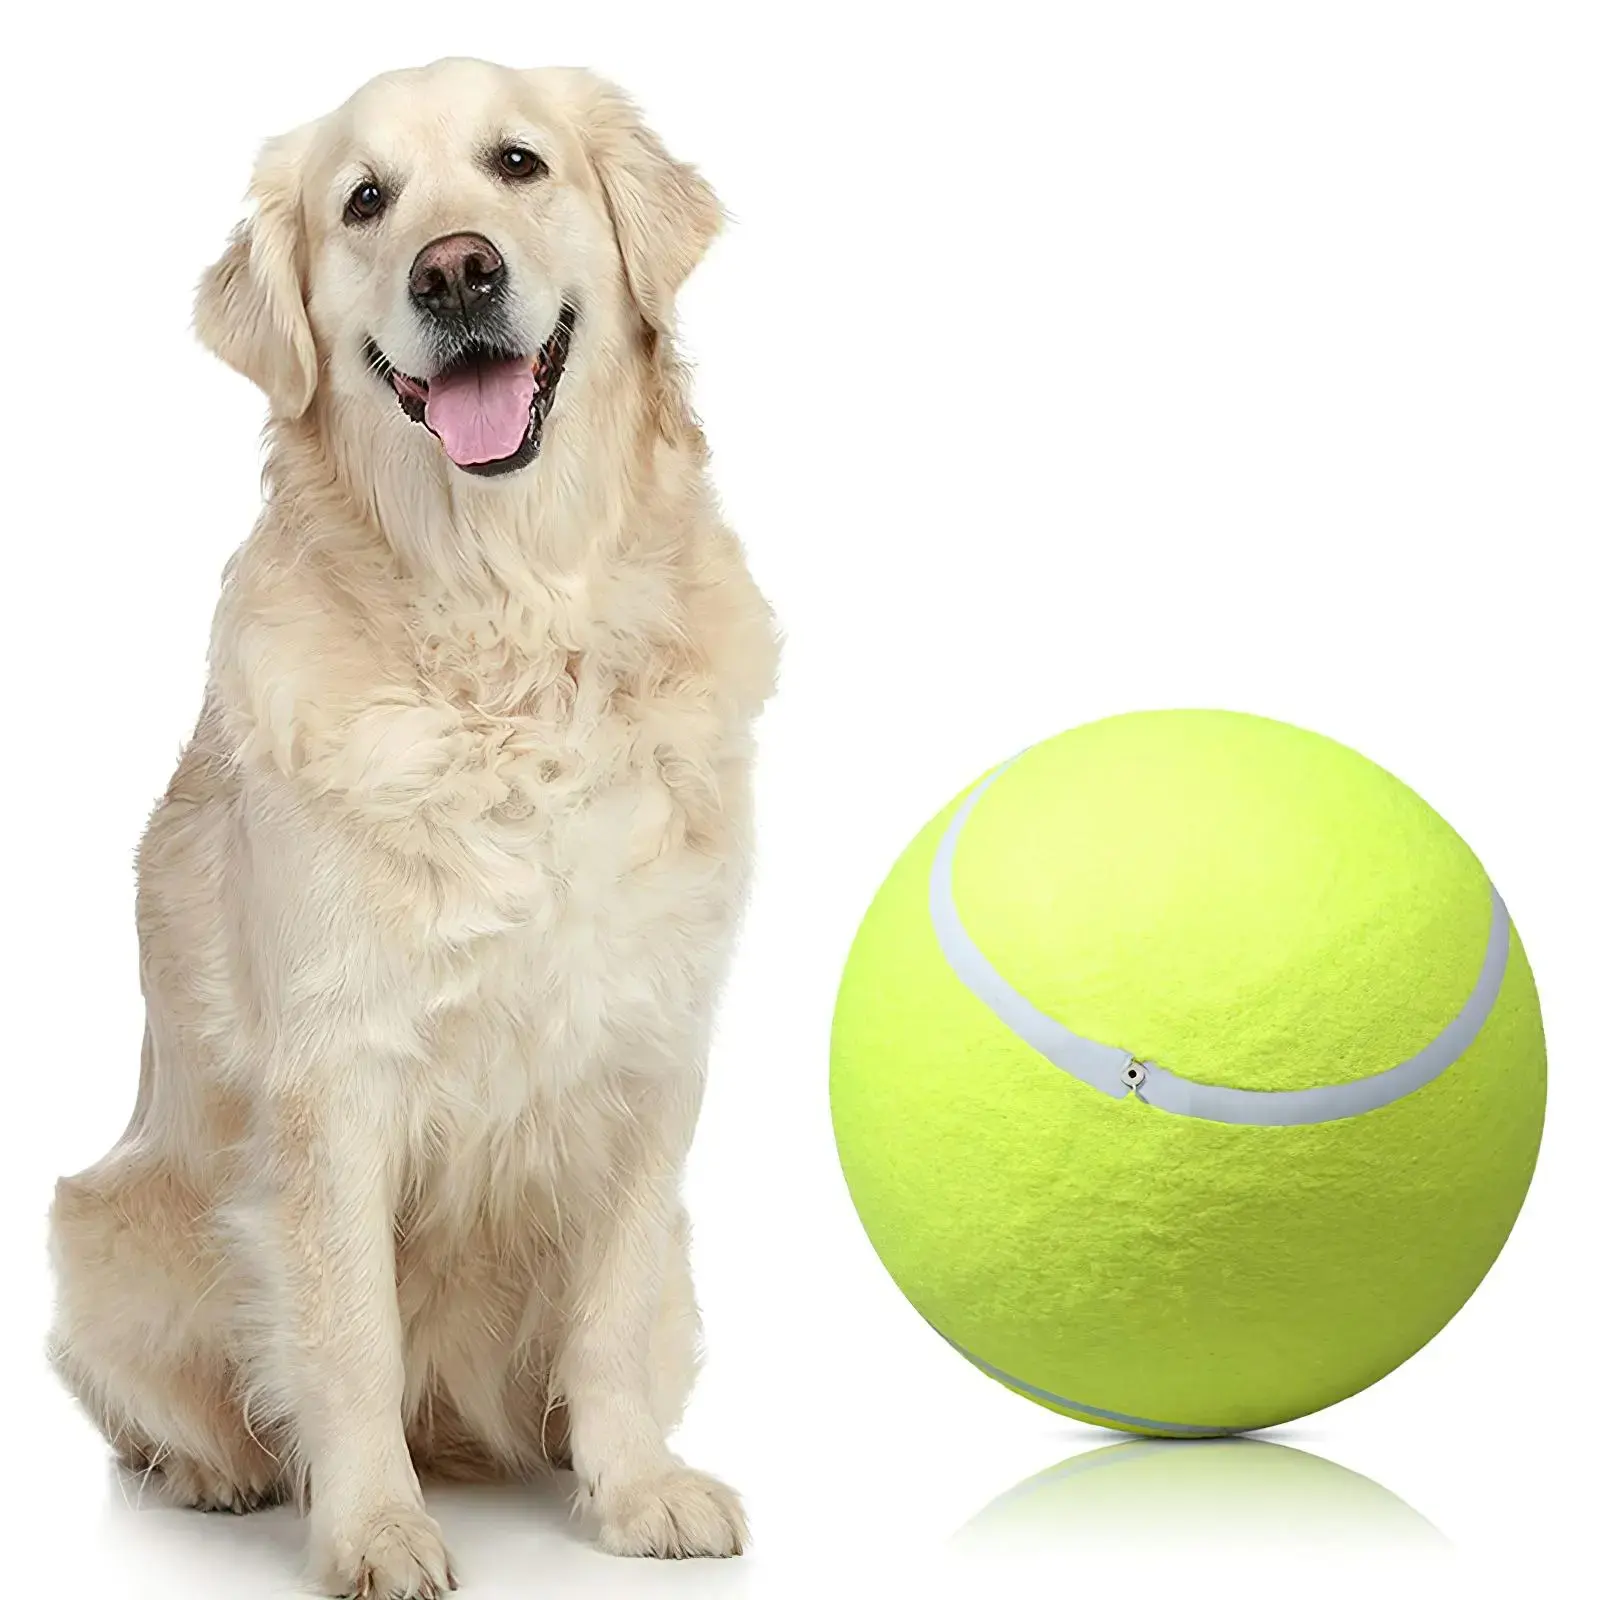 كرة تنس عملاقة مقاس 24 سم لعبة تدريب الكلاب كرة تنس عملاقة لعبة حيوانات أليفة قابلة للنفخ لعبة مضغ للكلاب الكبيرة دمى حيوانات أليفة للأطفال كبيرة الحجم